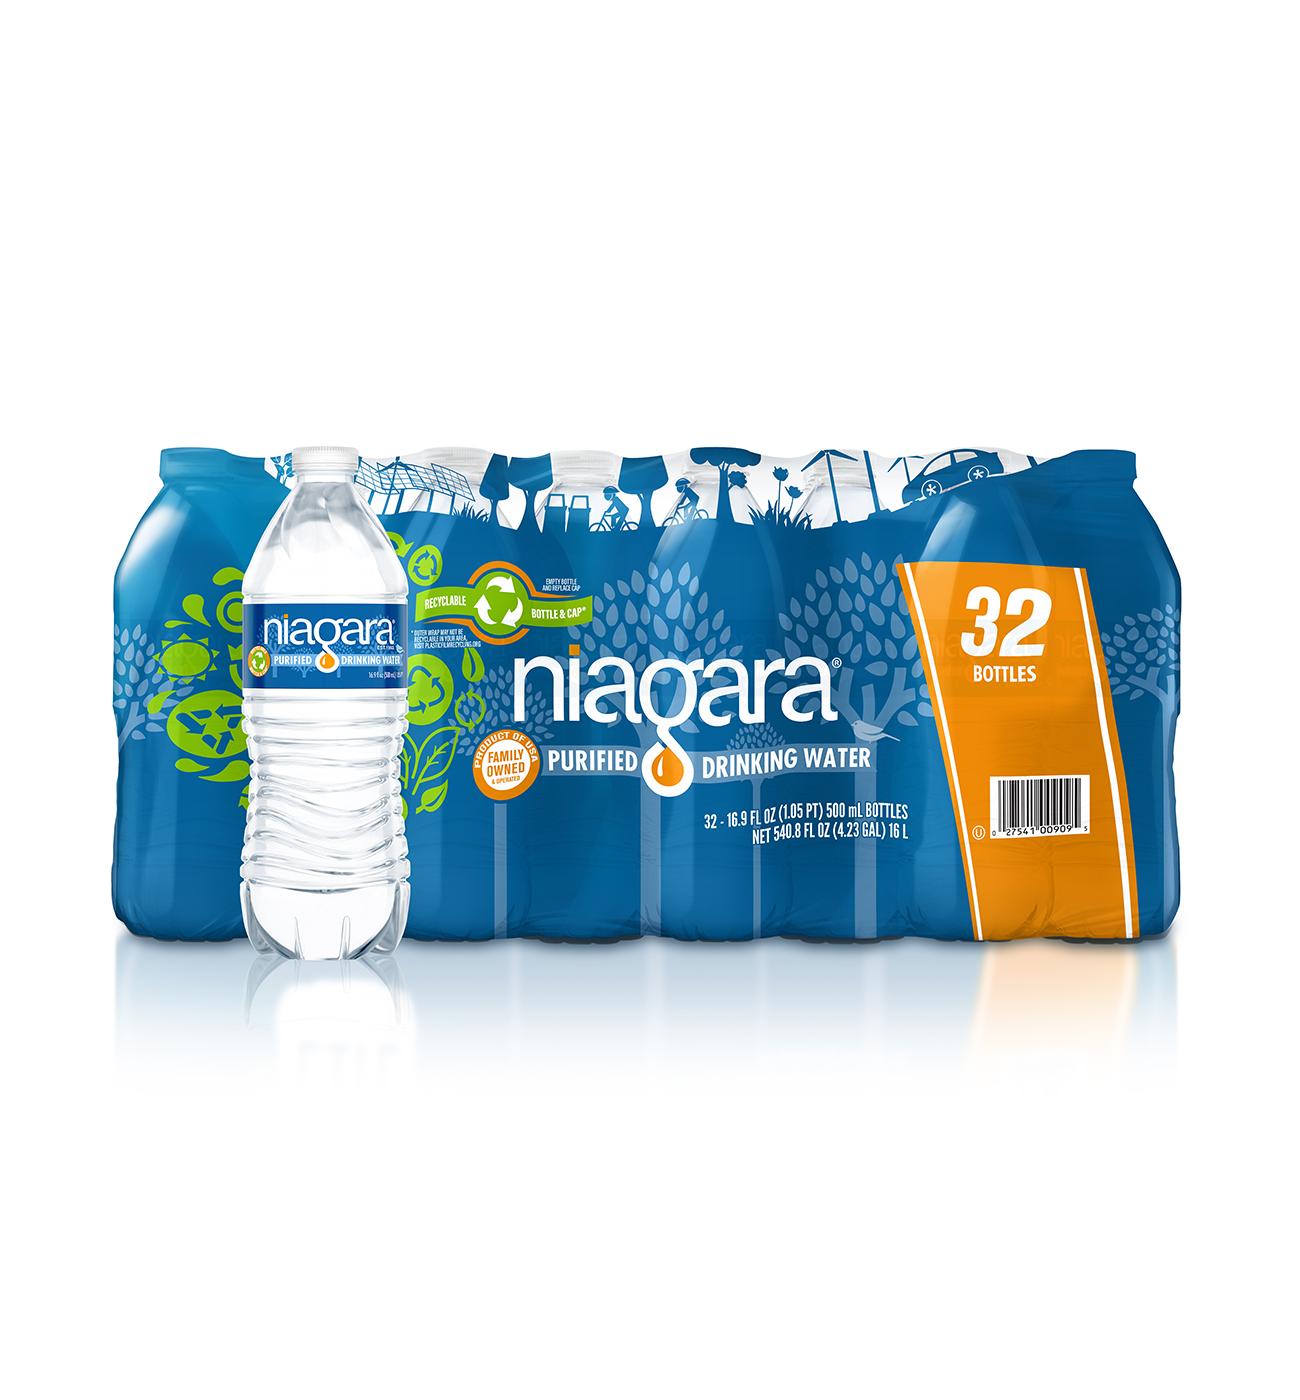 Niagara Purified Drinking Water 16.9 oz Bottles; image 1 of 3